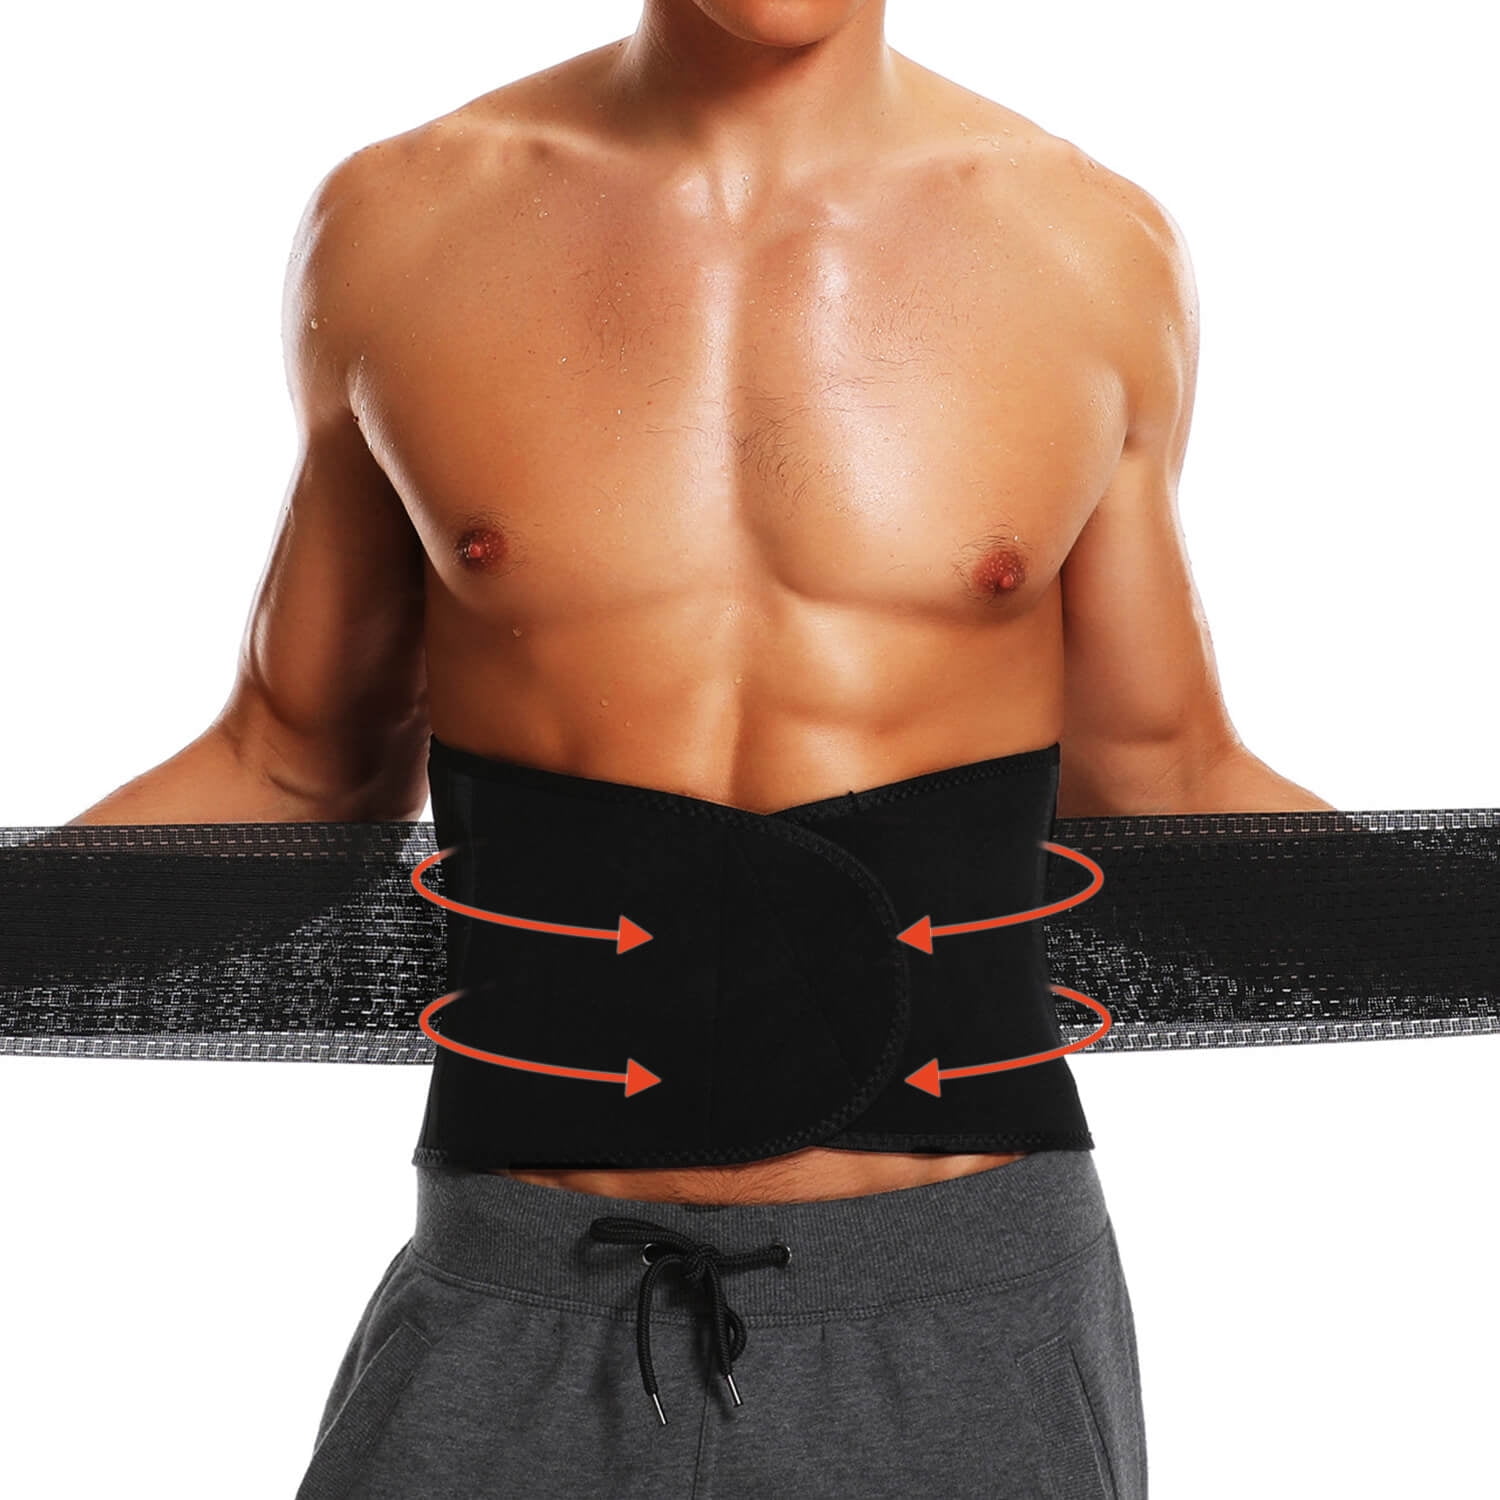 Waist Cincher Trimmer Sport Girdle Belt Waist Trainer Belt for Women & Man Slimming Body Shaper Belt 